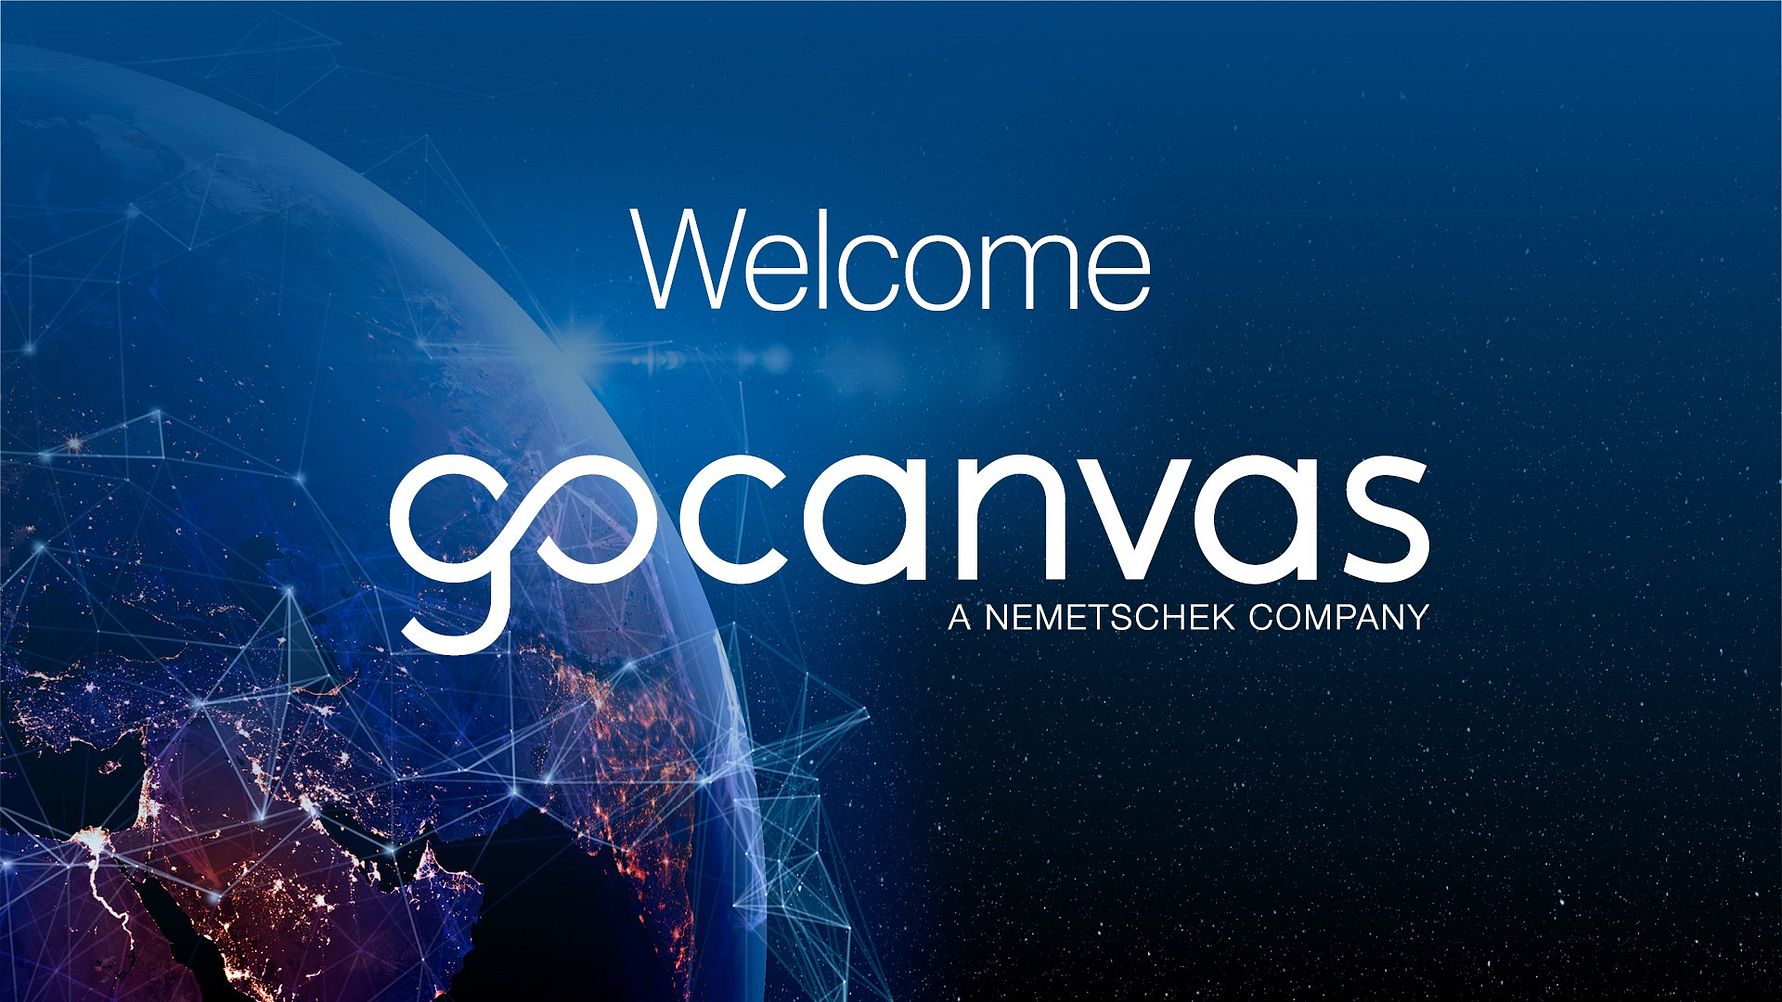 Nemetschek Group schließt Übernahme der GoCanvas Holdings, Inc. erfolgreich ab